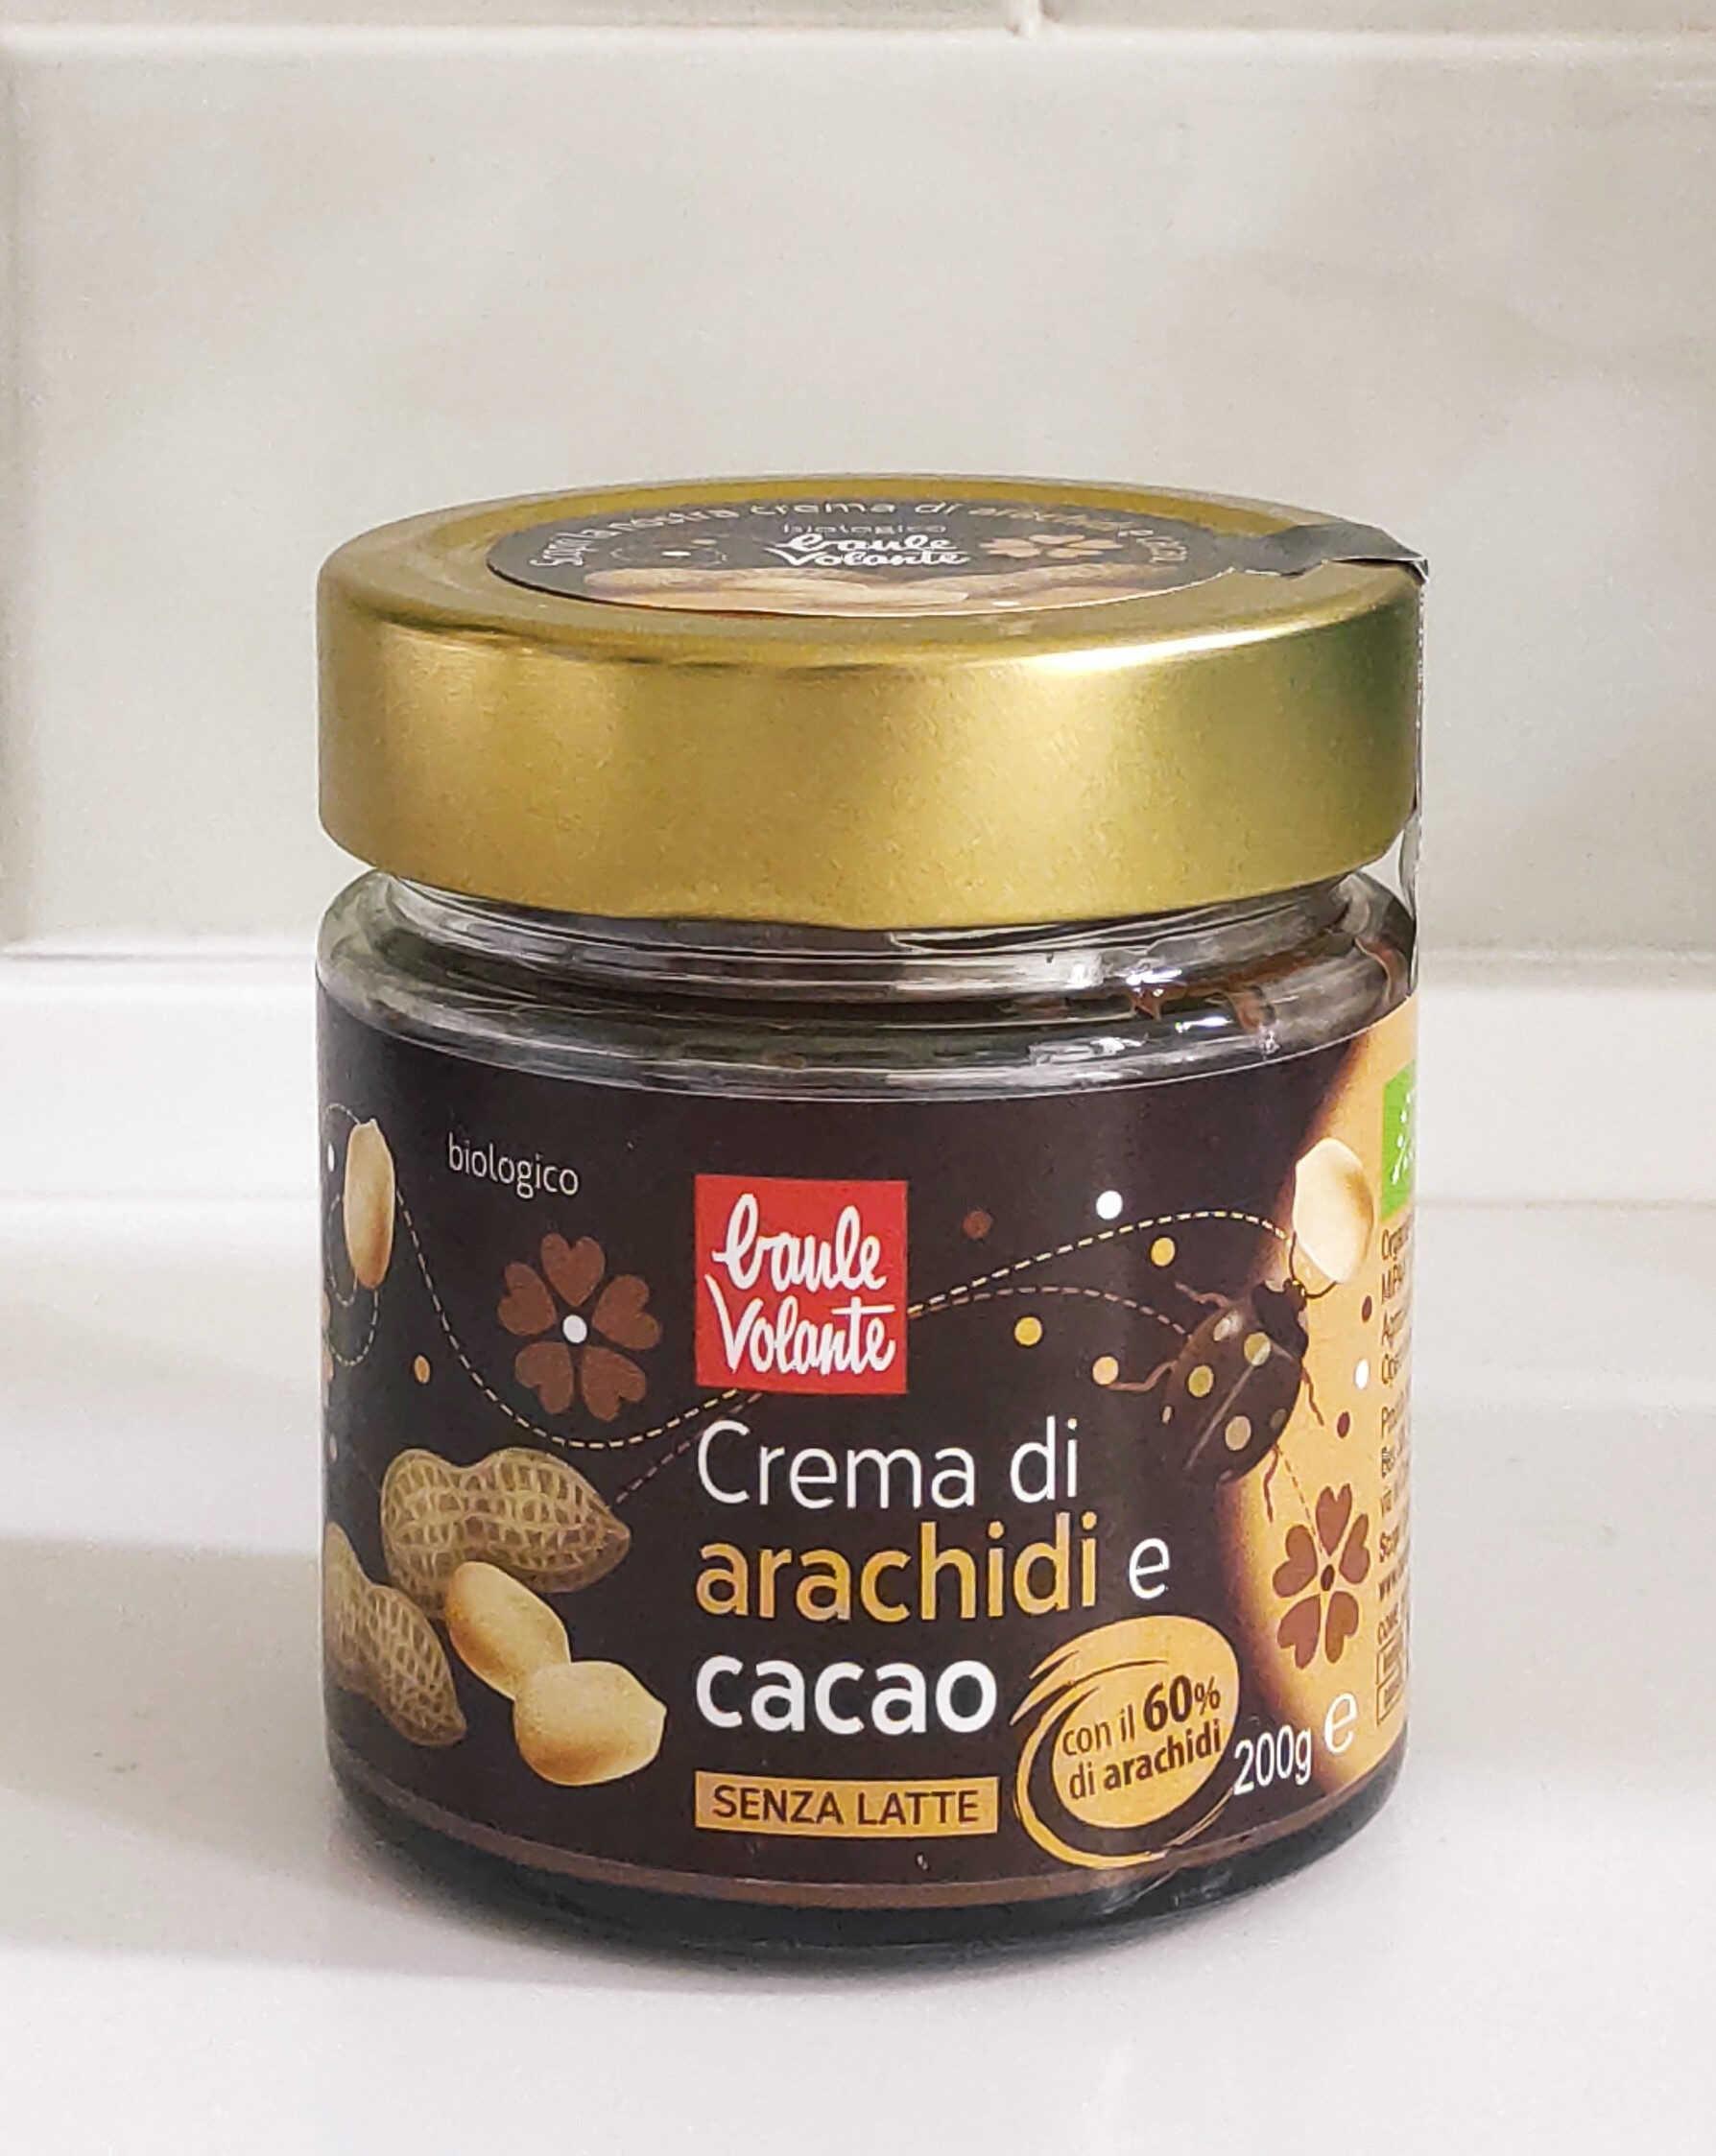 Crema di arachidi e cacao - Product - es